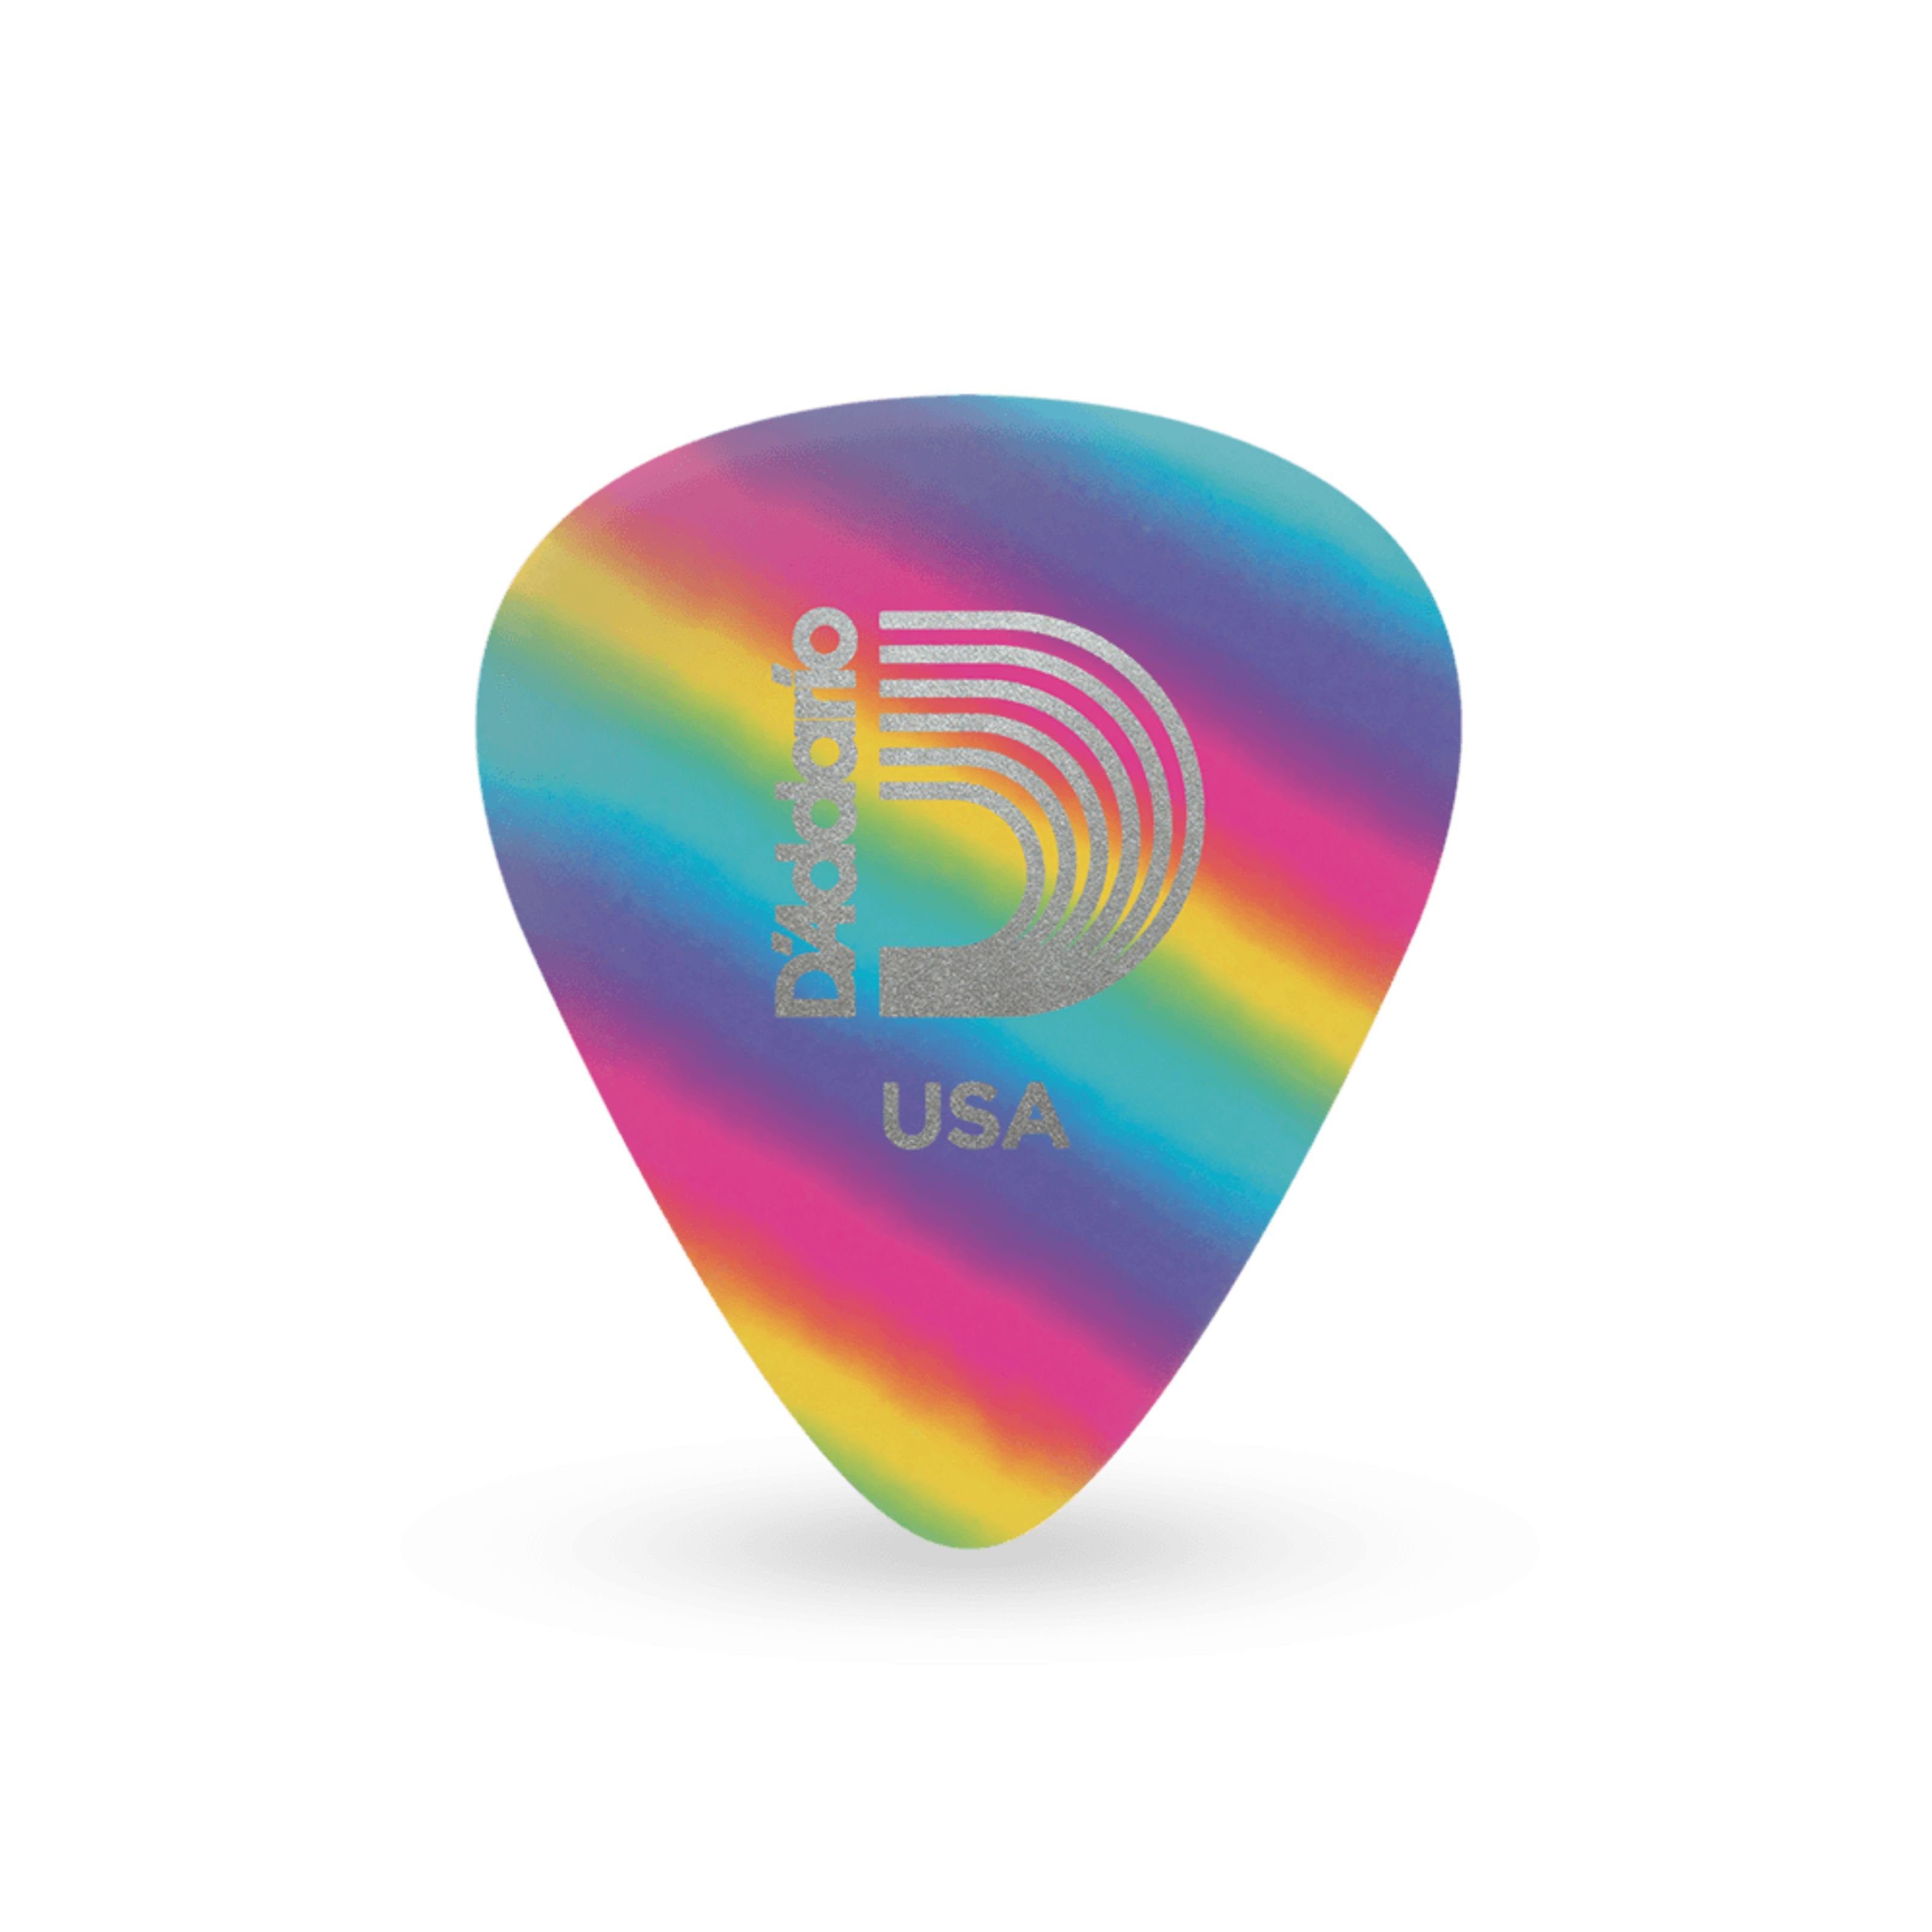 Daddario Spielzeug-Musikinstrument, 1CRB4-10 Rainbow Picks 10-Pack 0,70 mm - Plektren Set